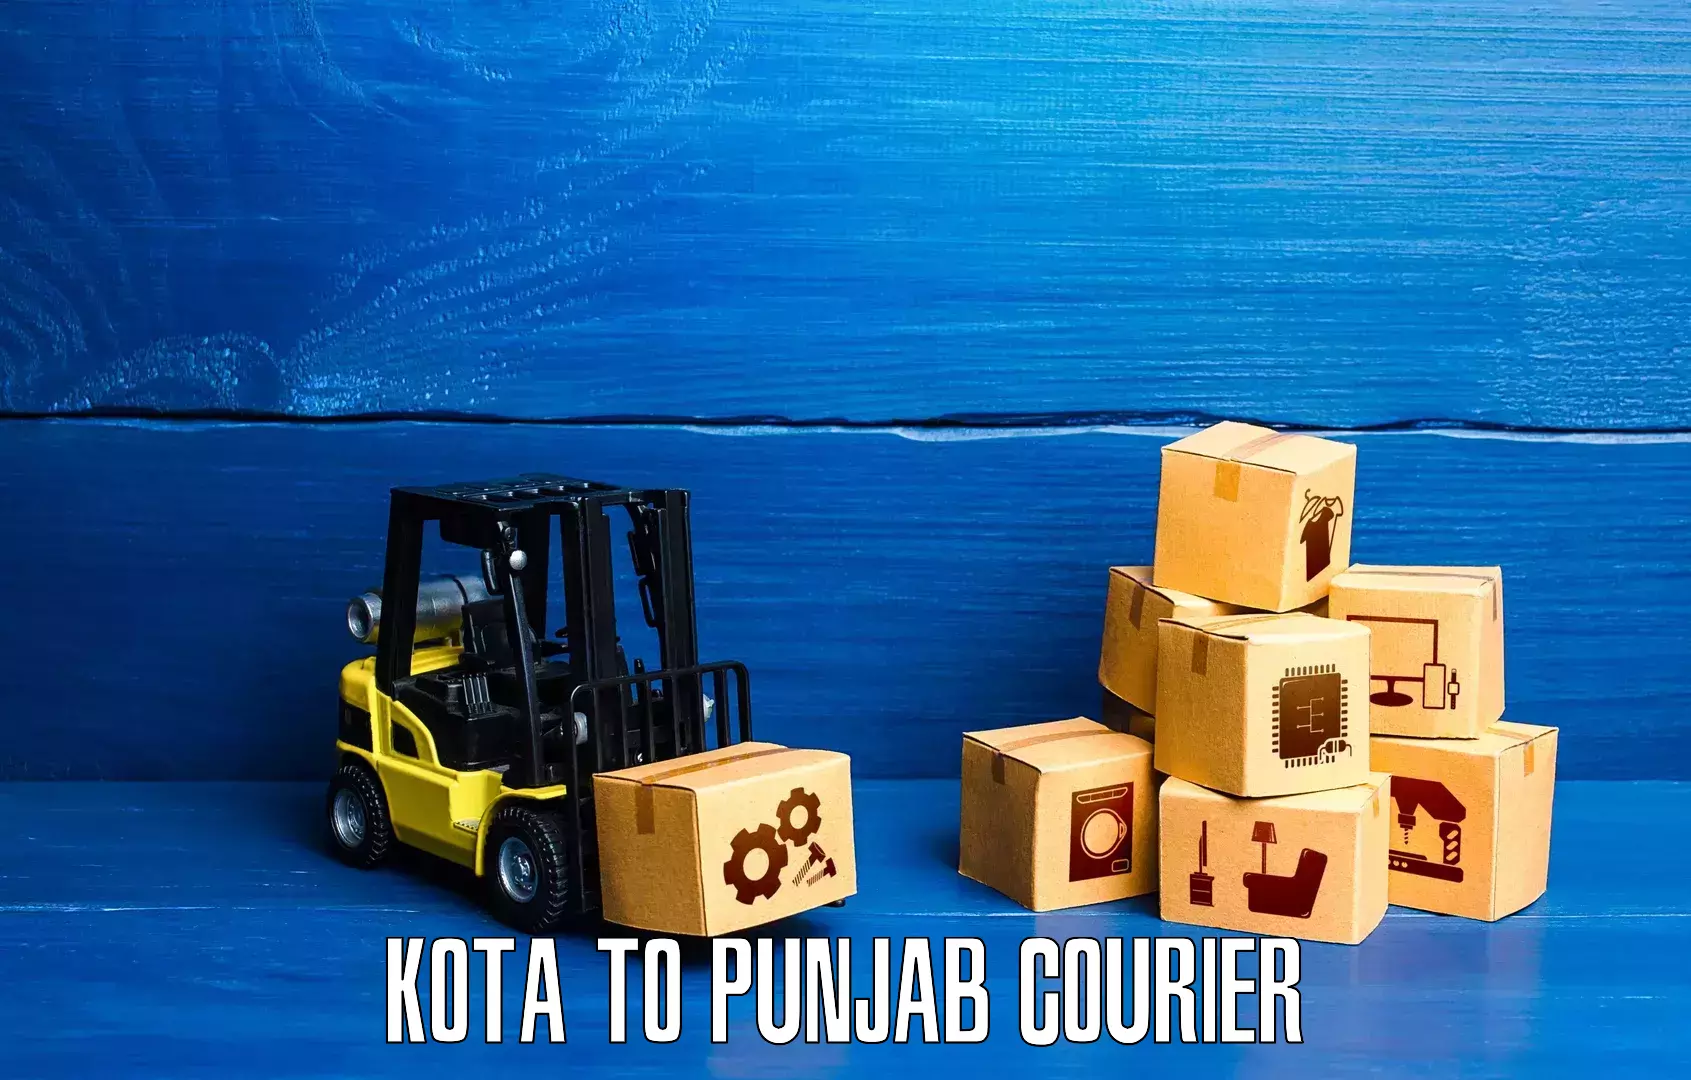 Express logistics Kota to Punjab